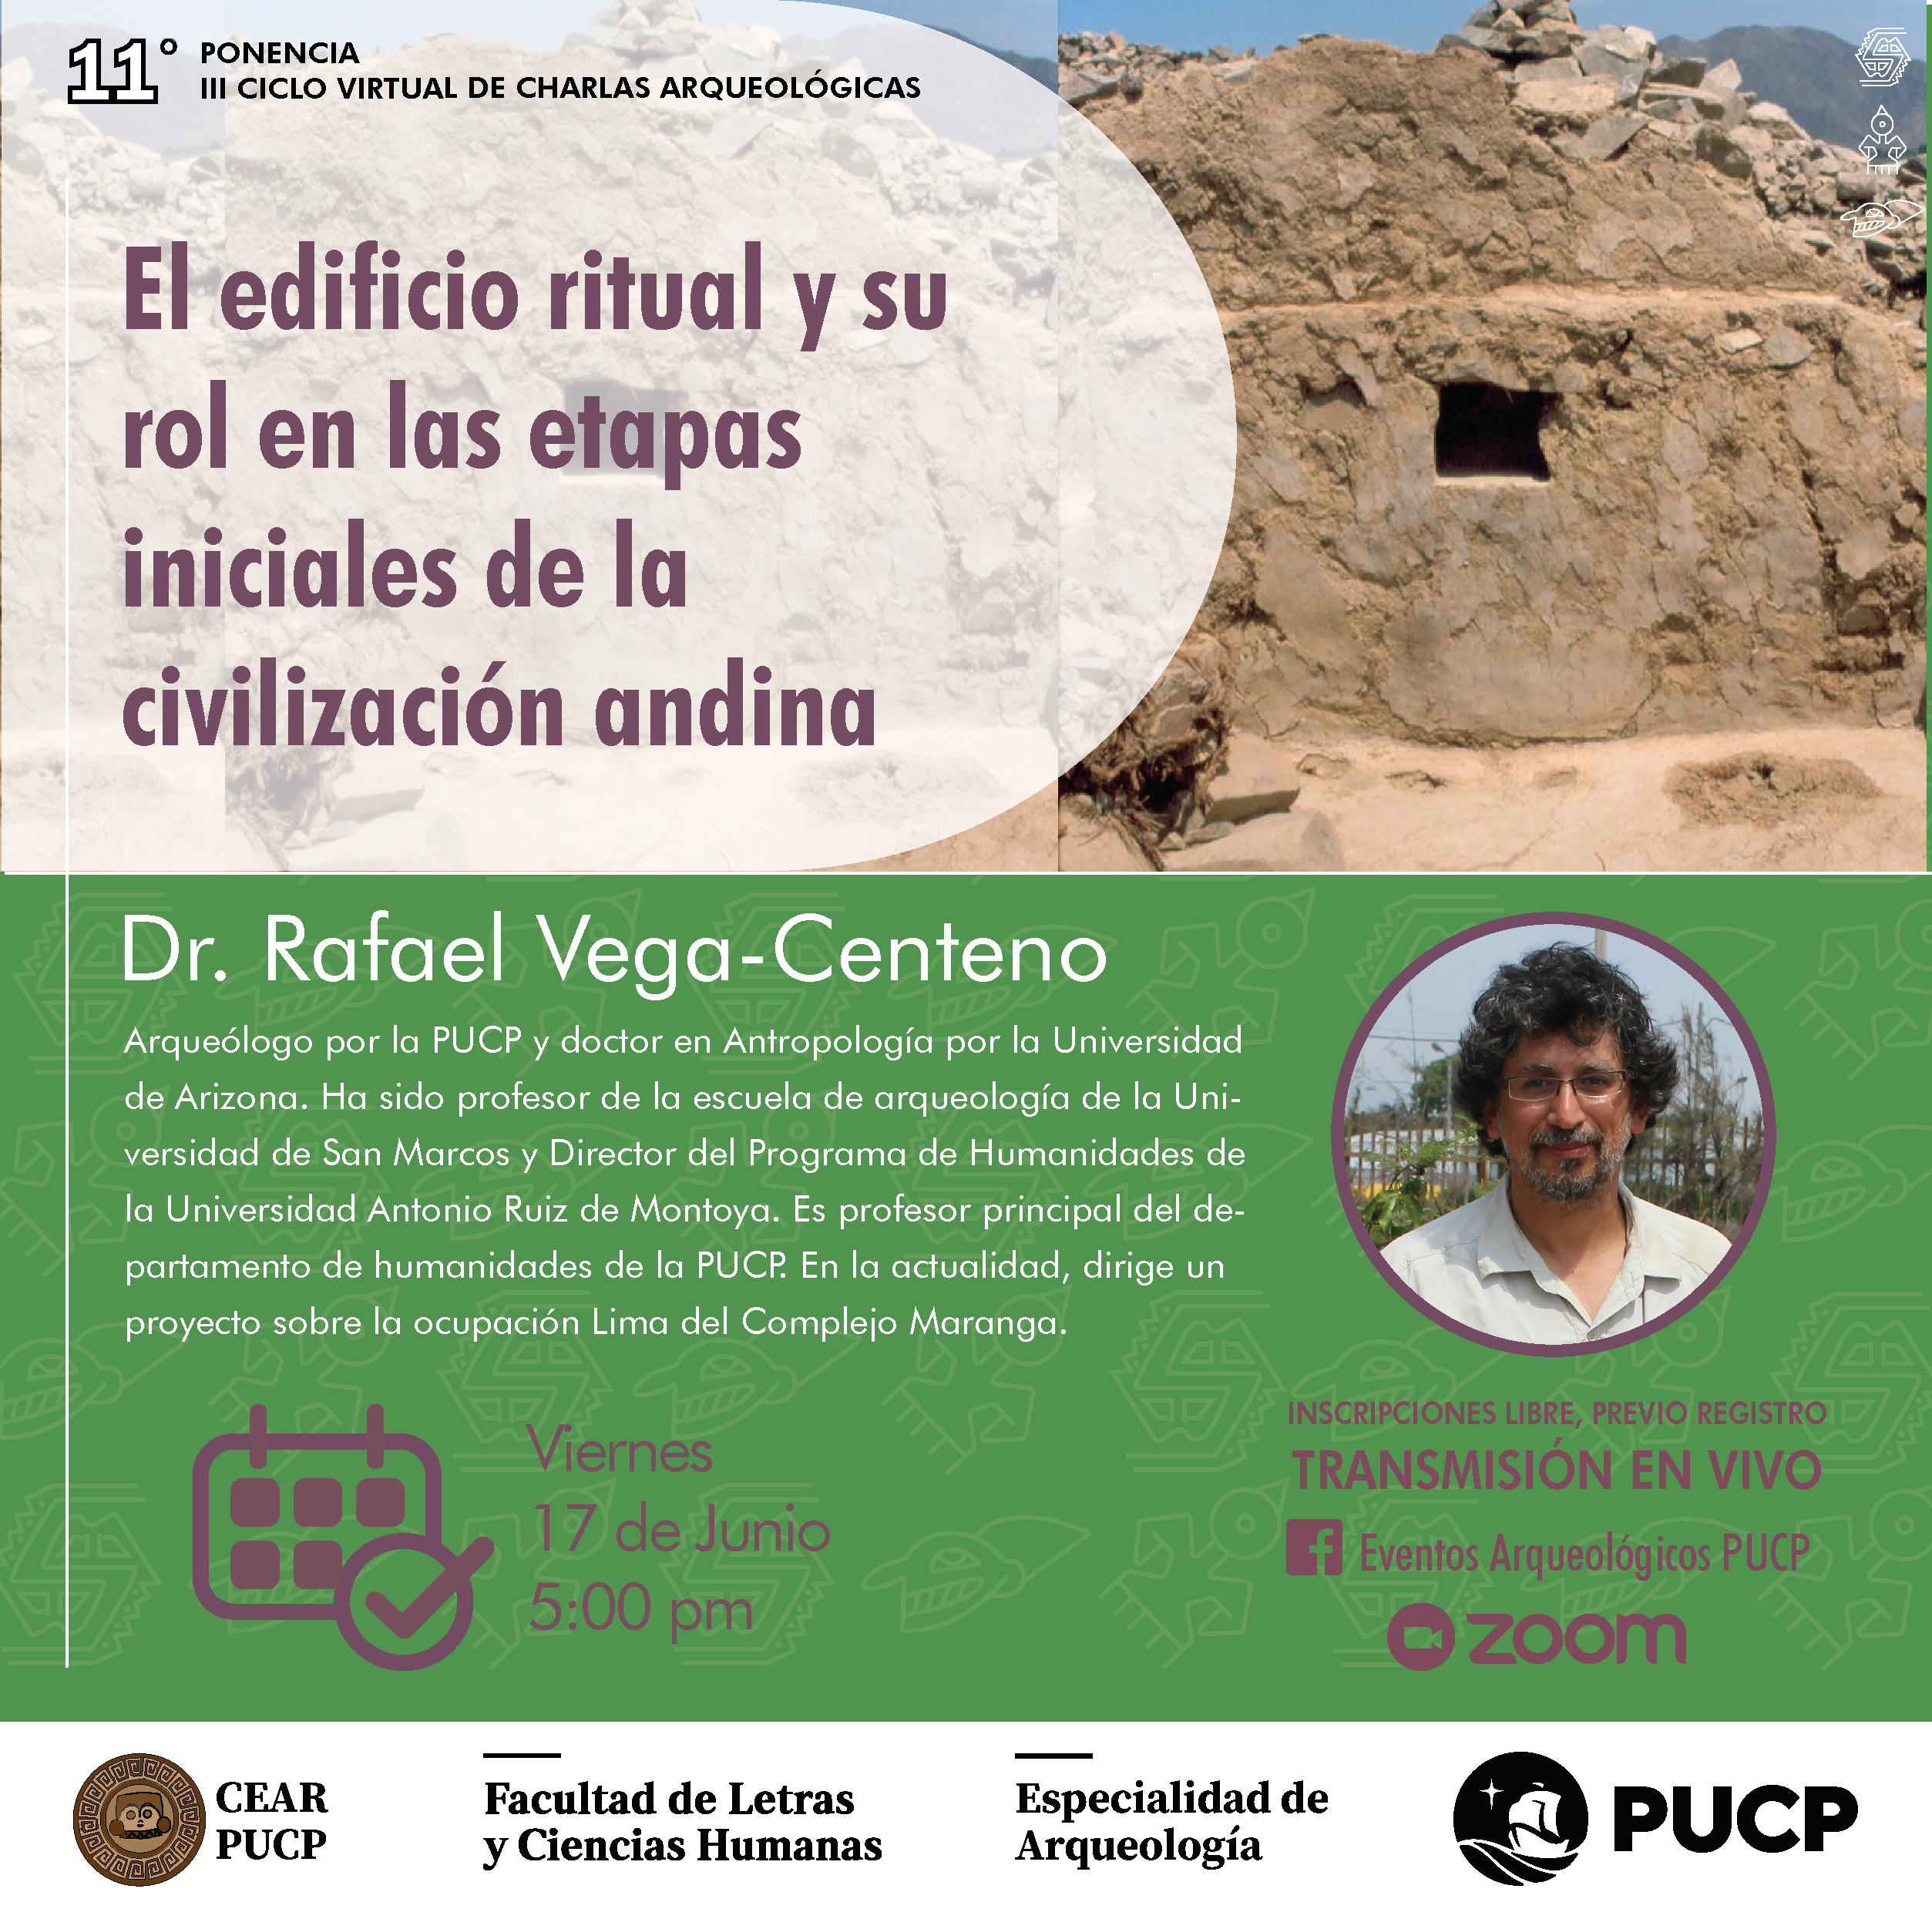 El edificio ritual y su rol en las etapas iniciales de la civilización andina